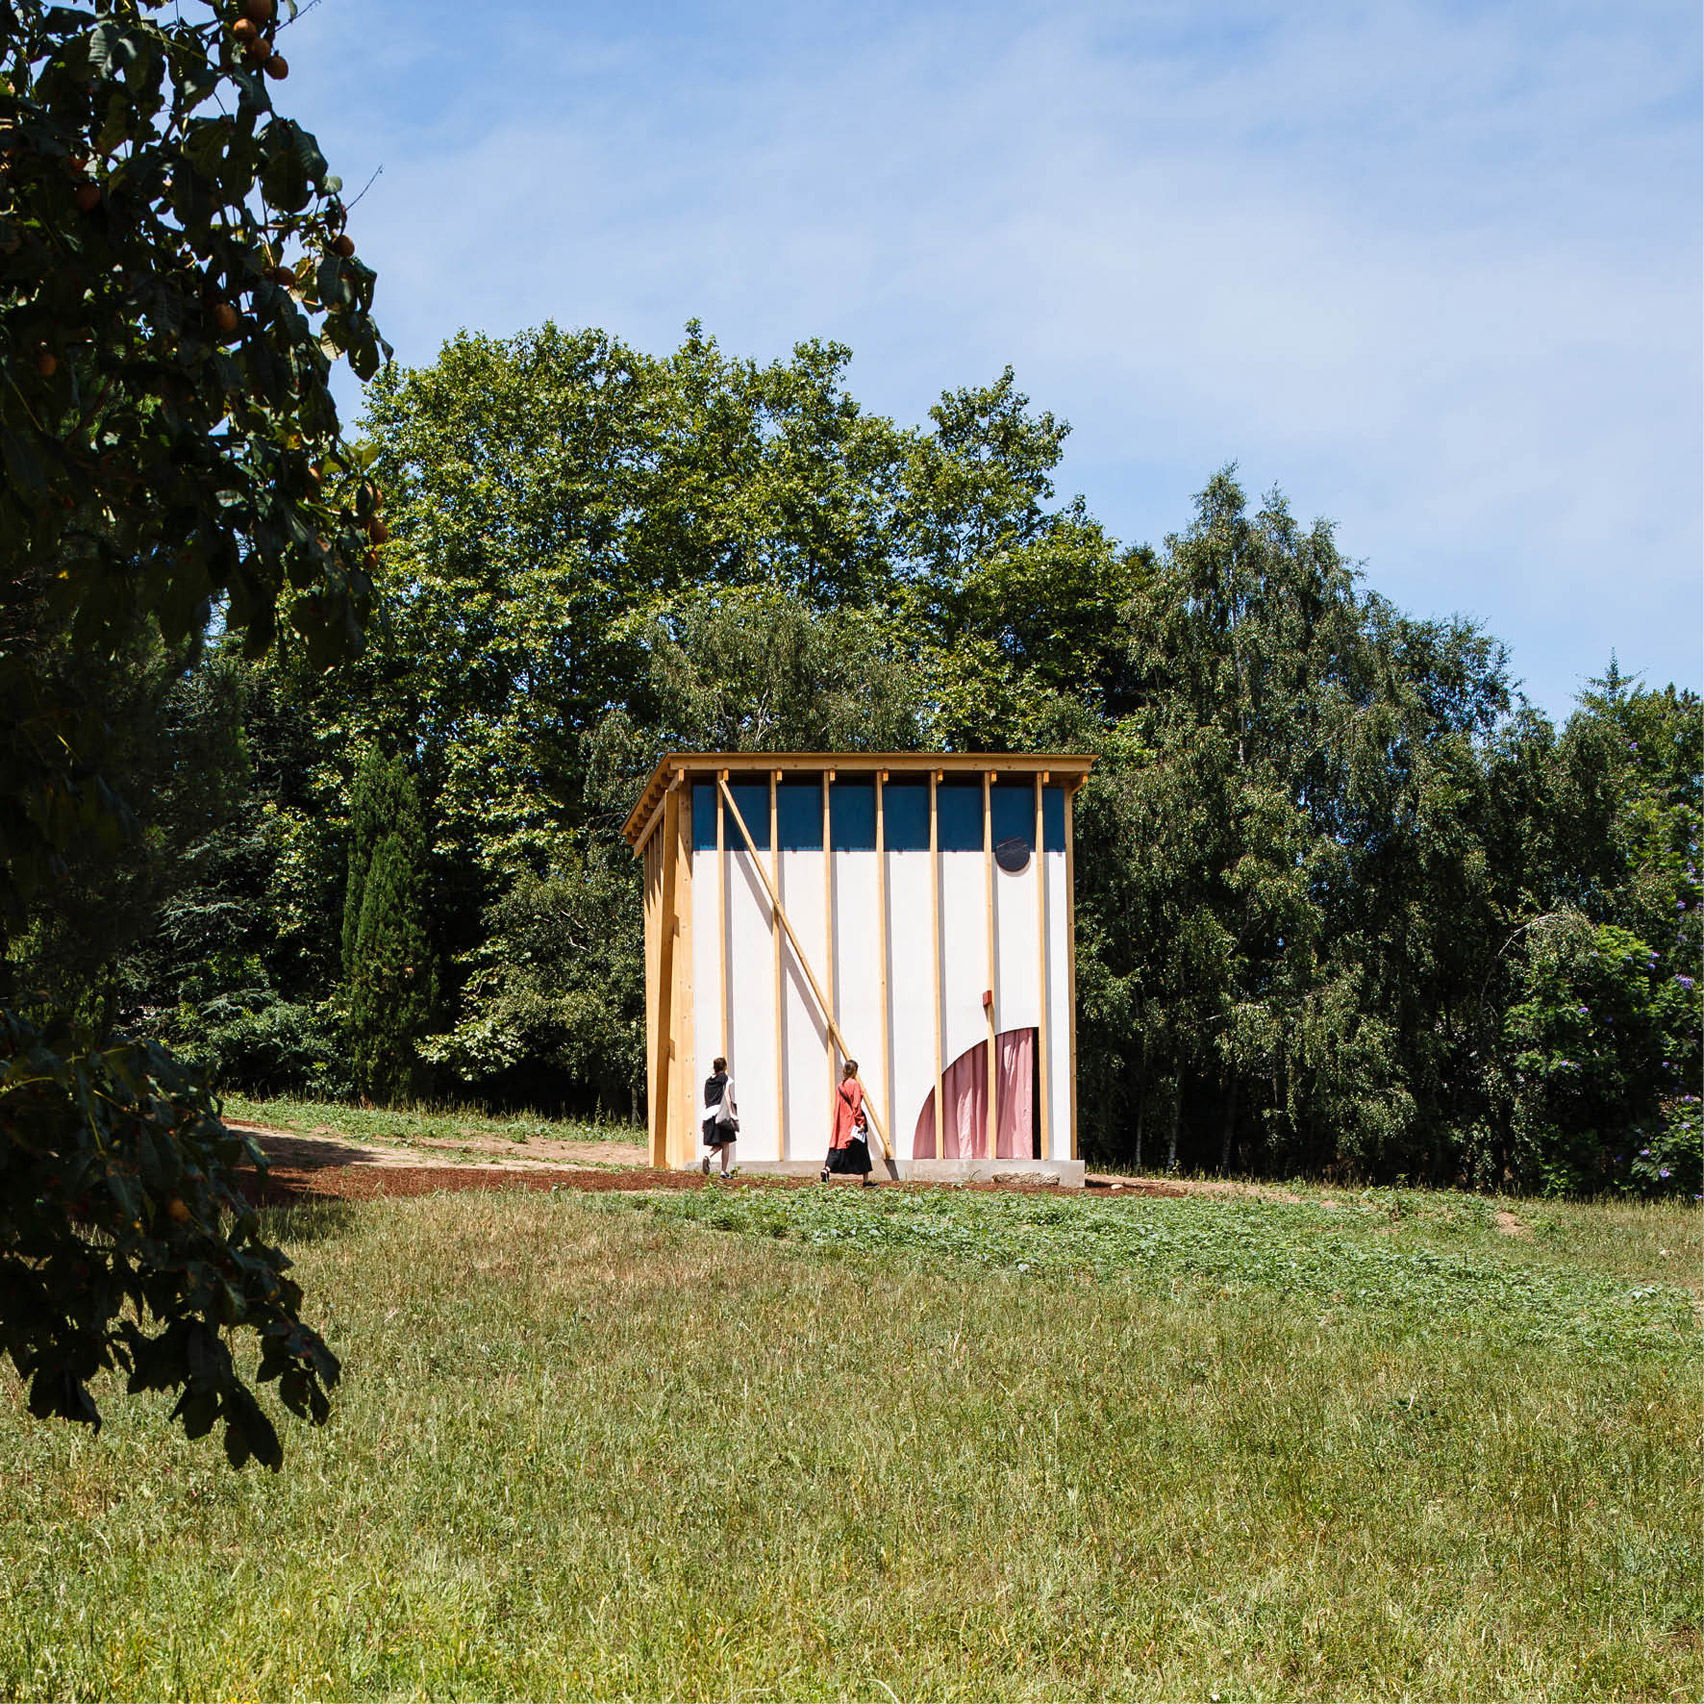 Fala Atelier's pavilion for Serralves park